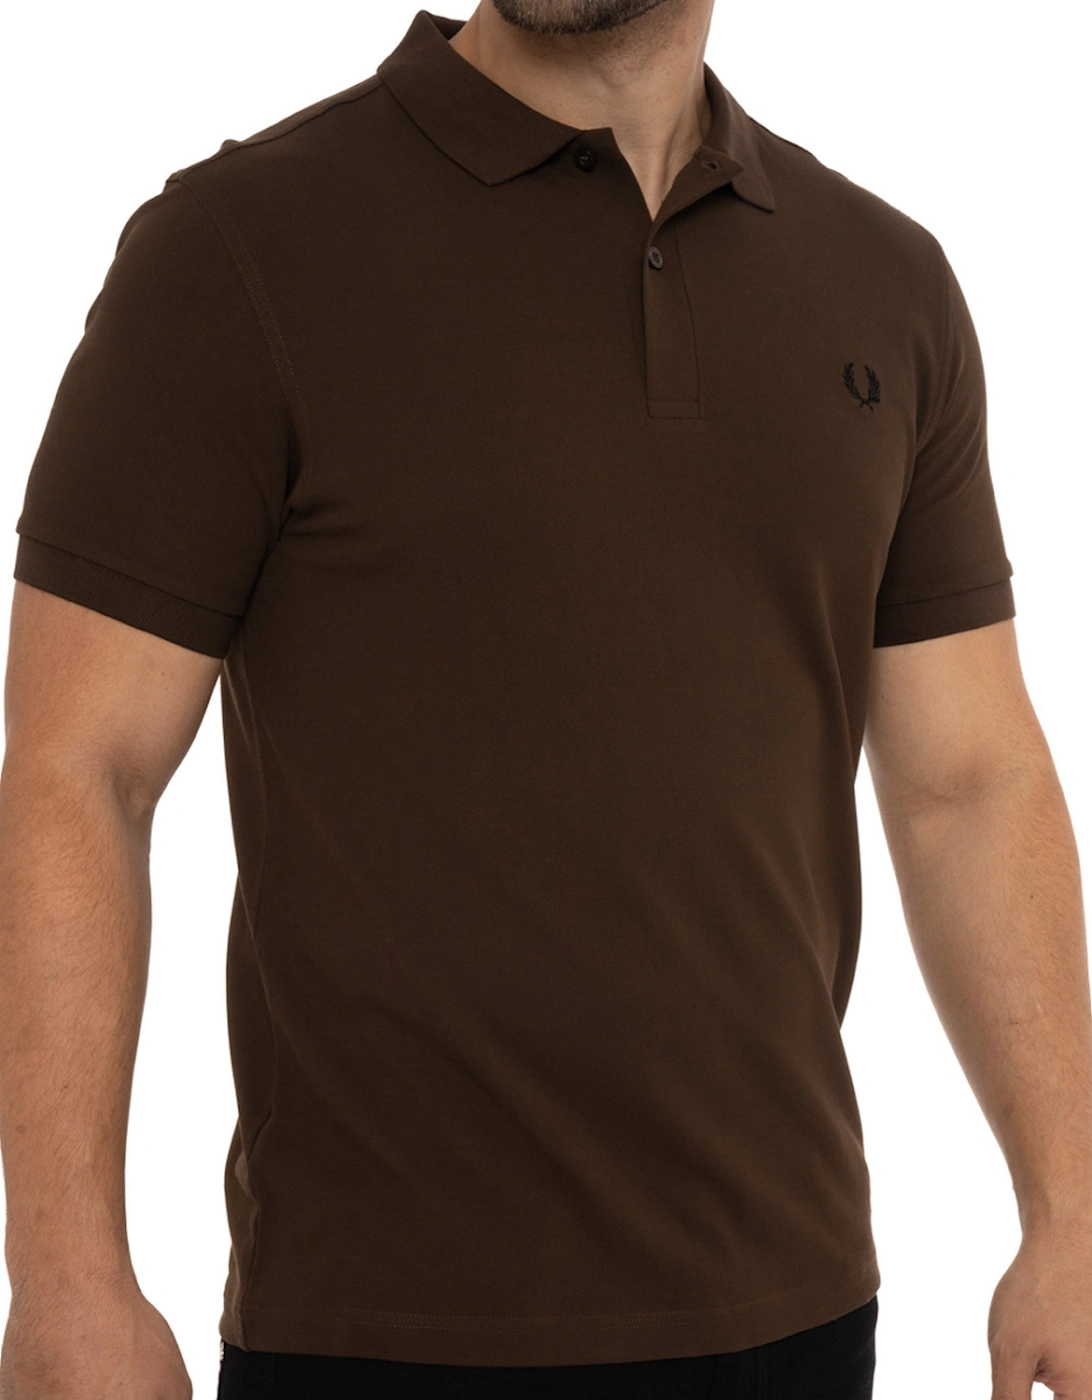 Mens Plain Polo Shirt (Brown)